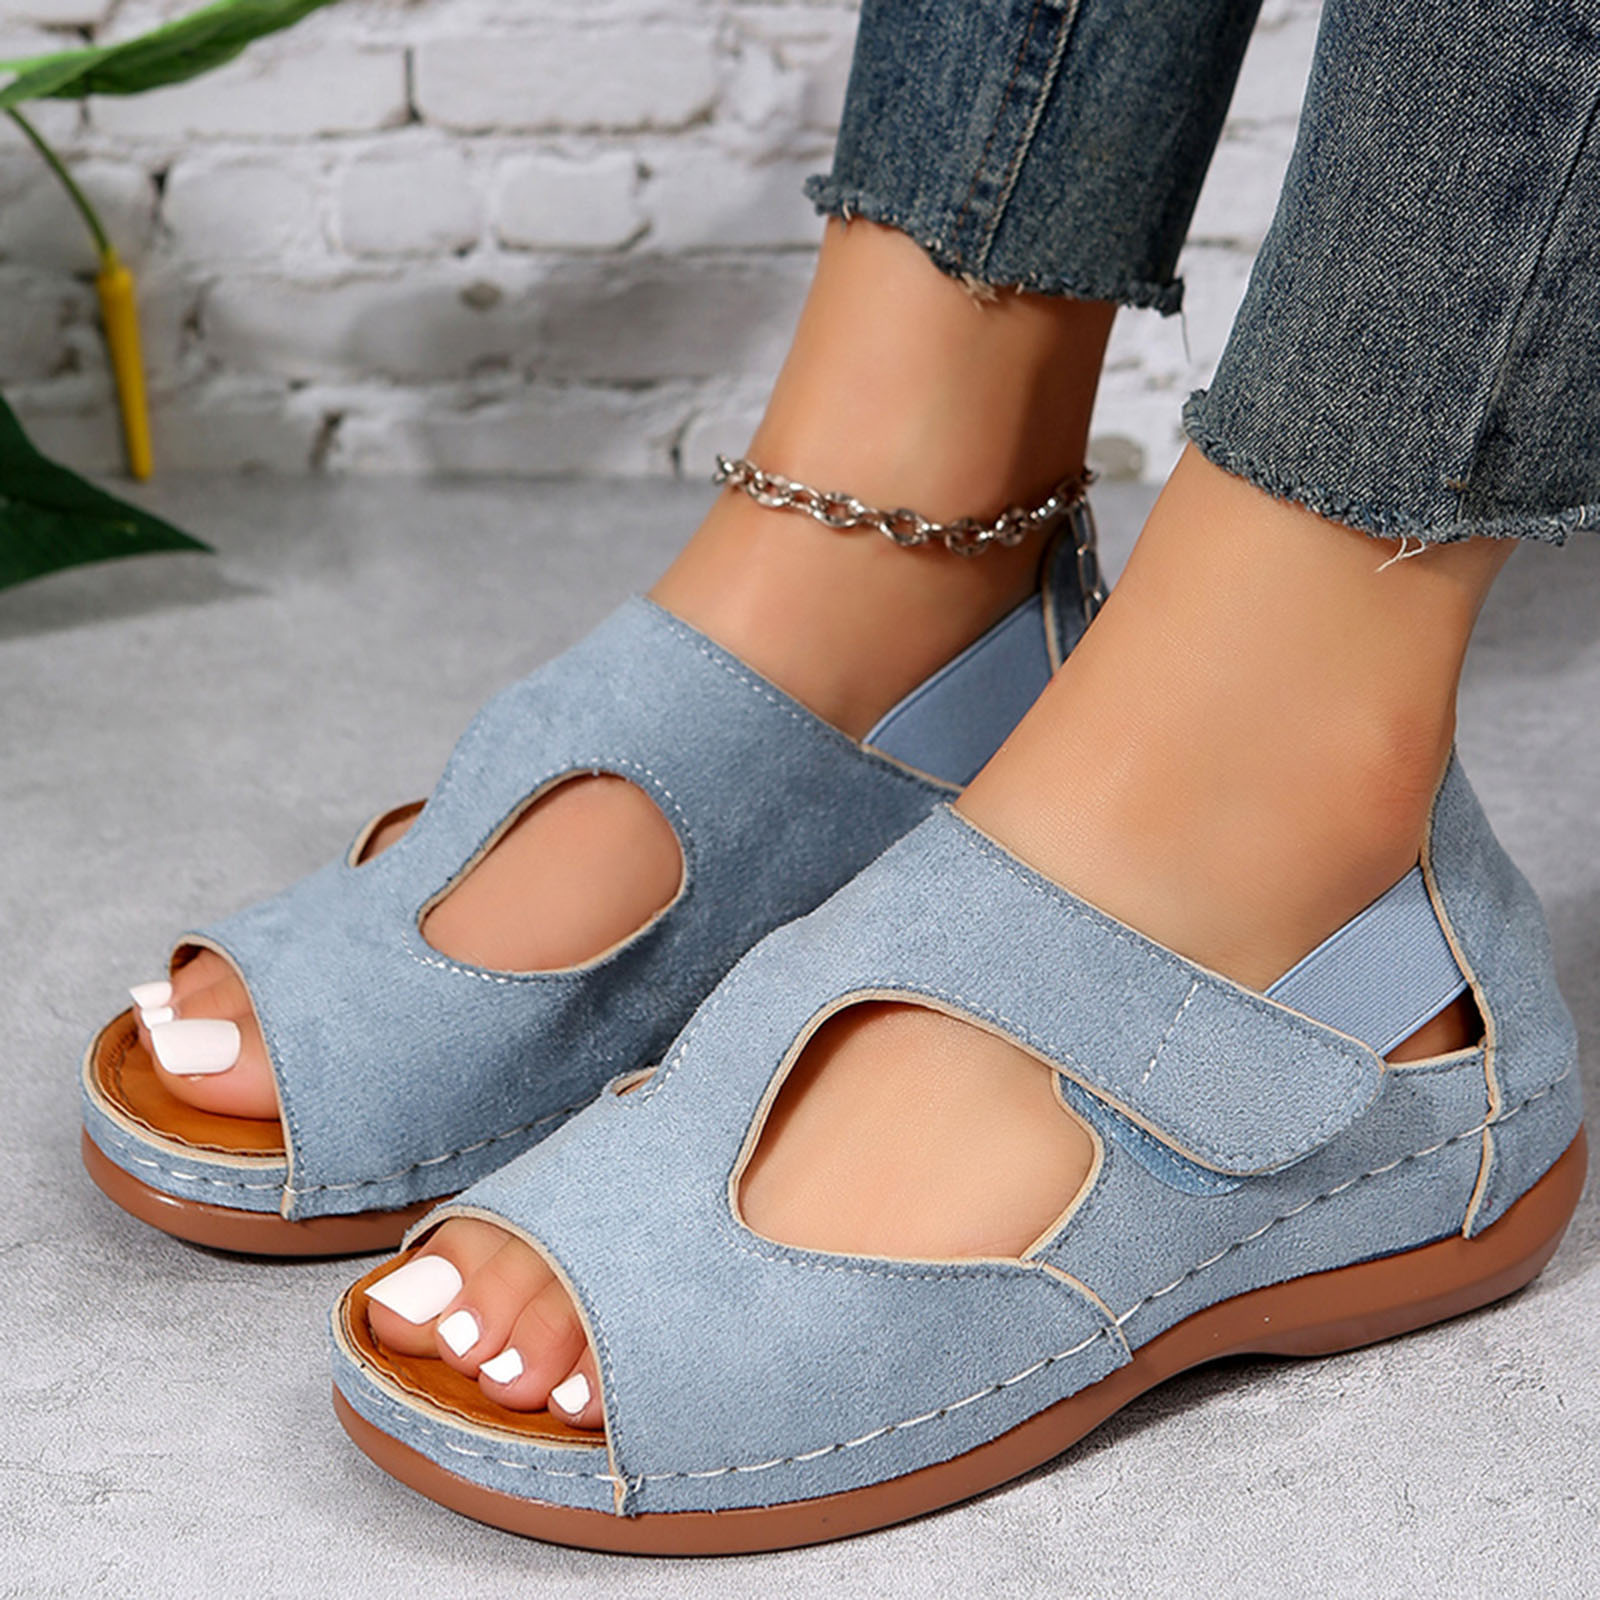 ILJNDTGBE Platform Sandals for Women Ankle Strap Sandals Fashion Summer ...